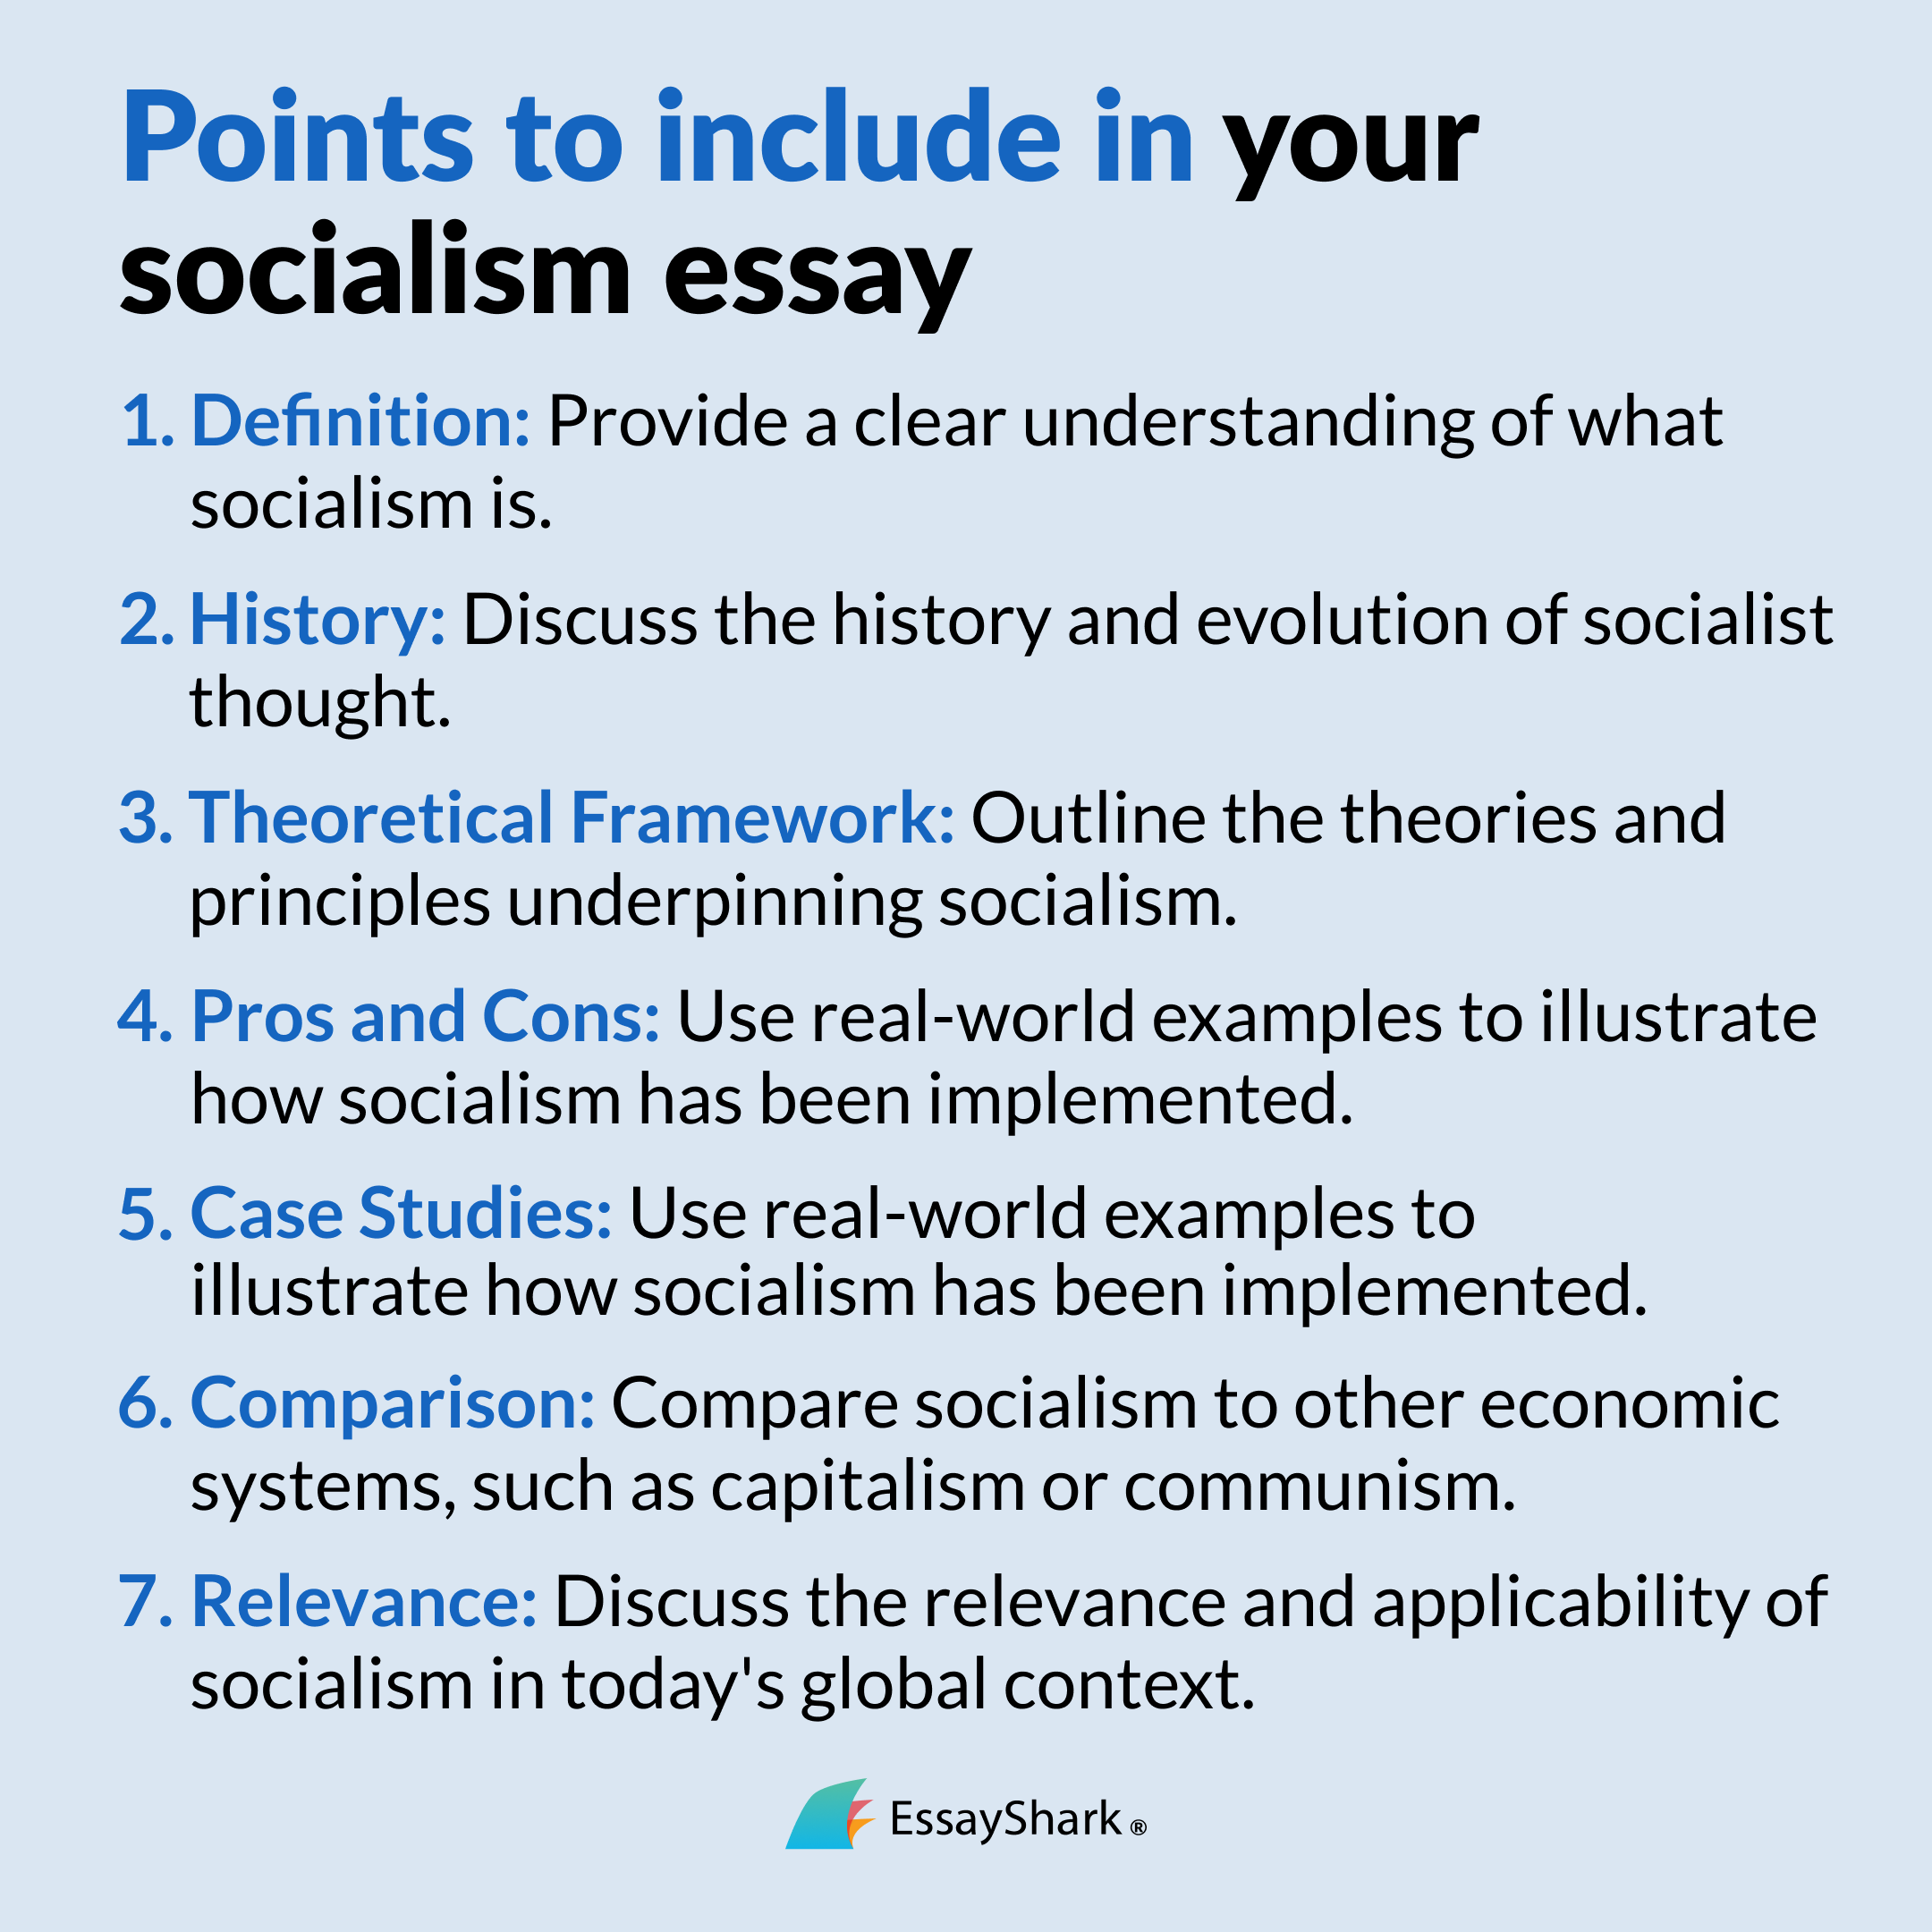 socialism essay points to analyze